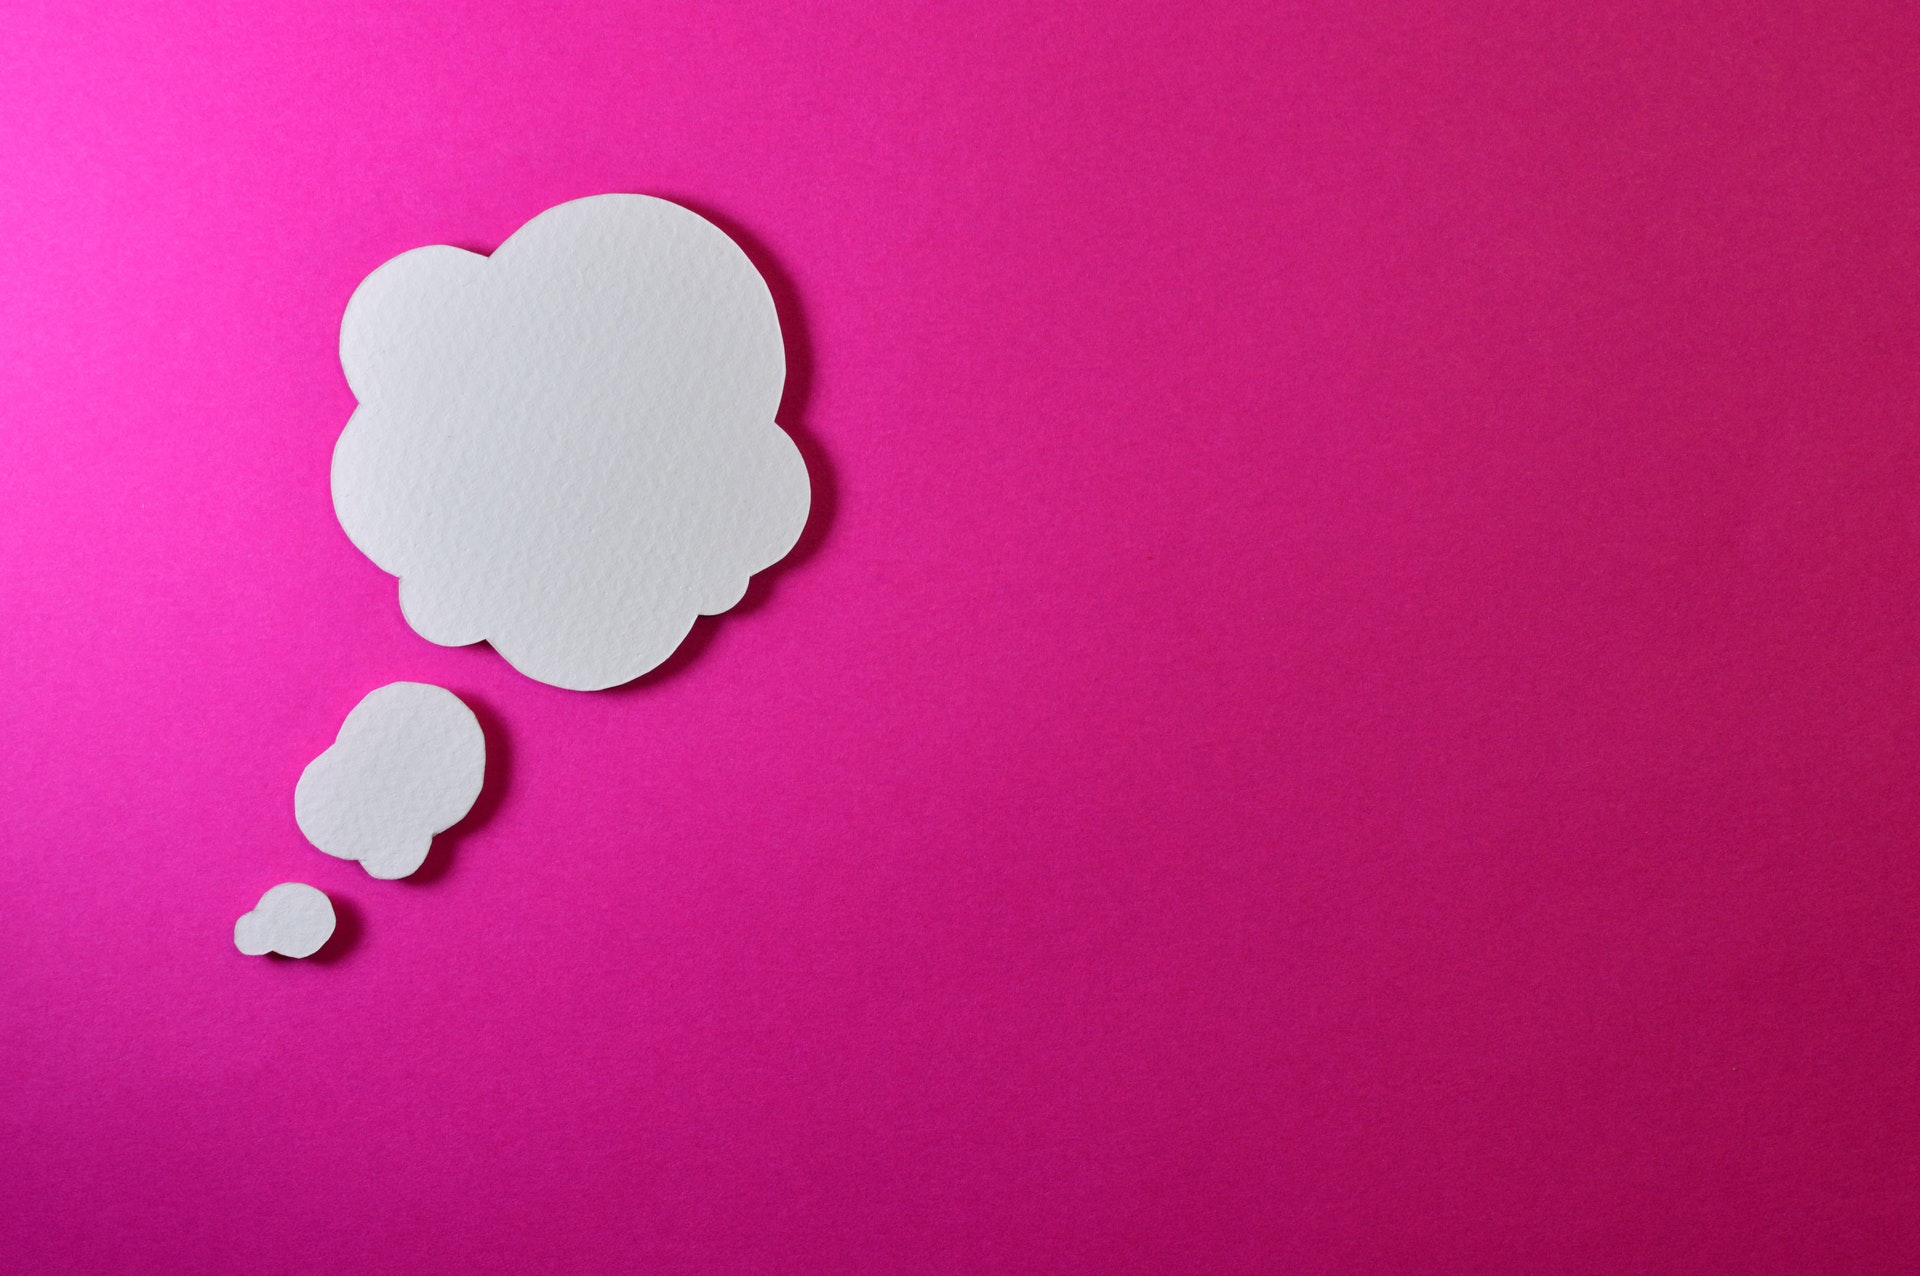 Fundo rosa e um desenho de uma nuvem simbolizando ideia. Imagem ilustrativa do texto quero empreender.